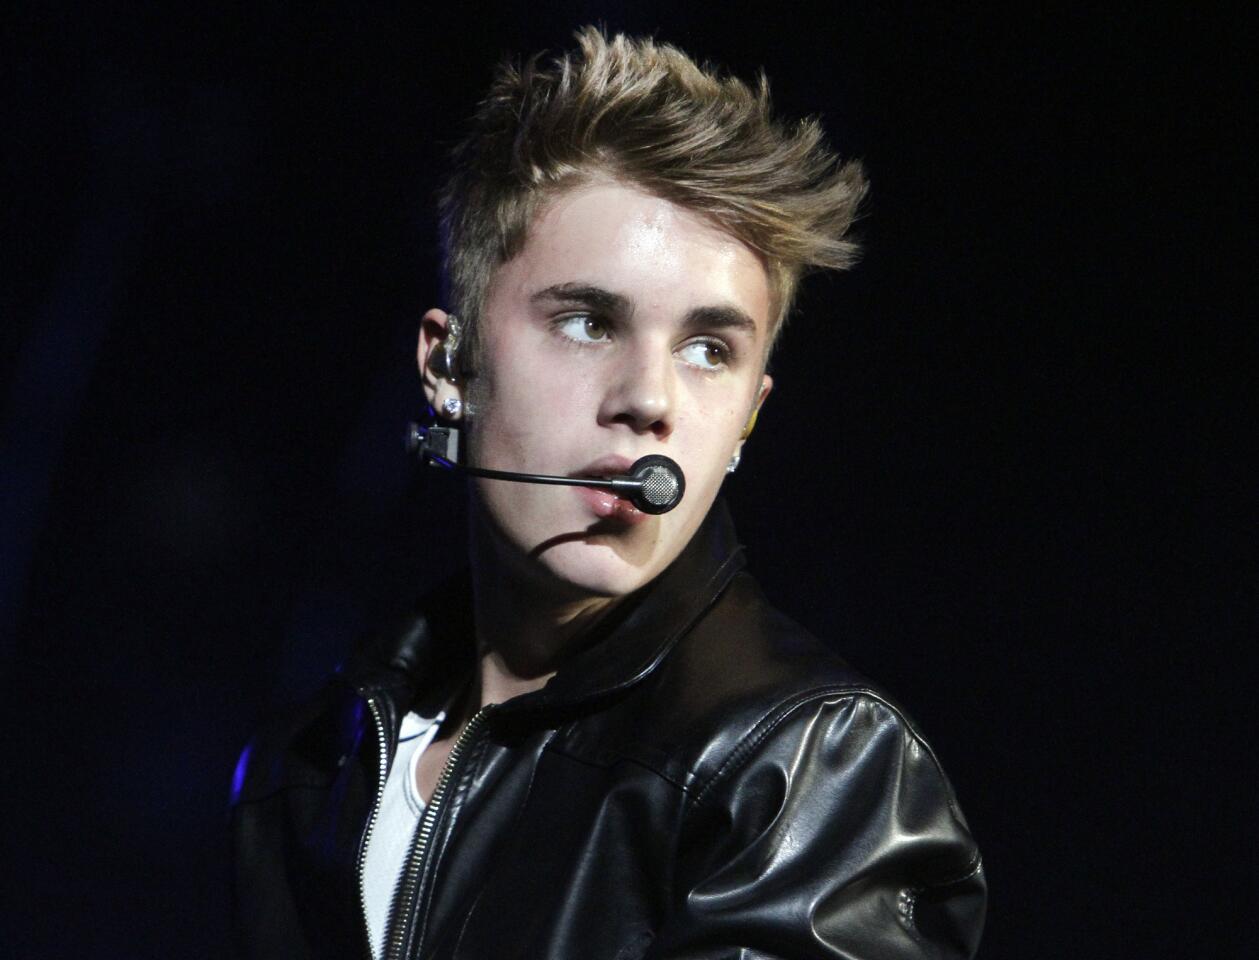 6. Justin Bieber, $71.6 million